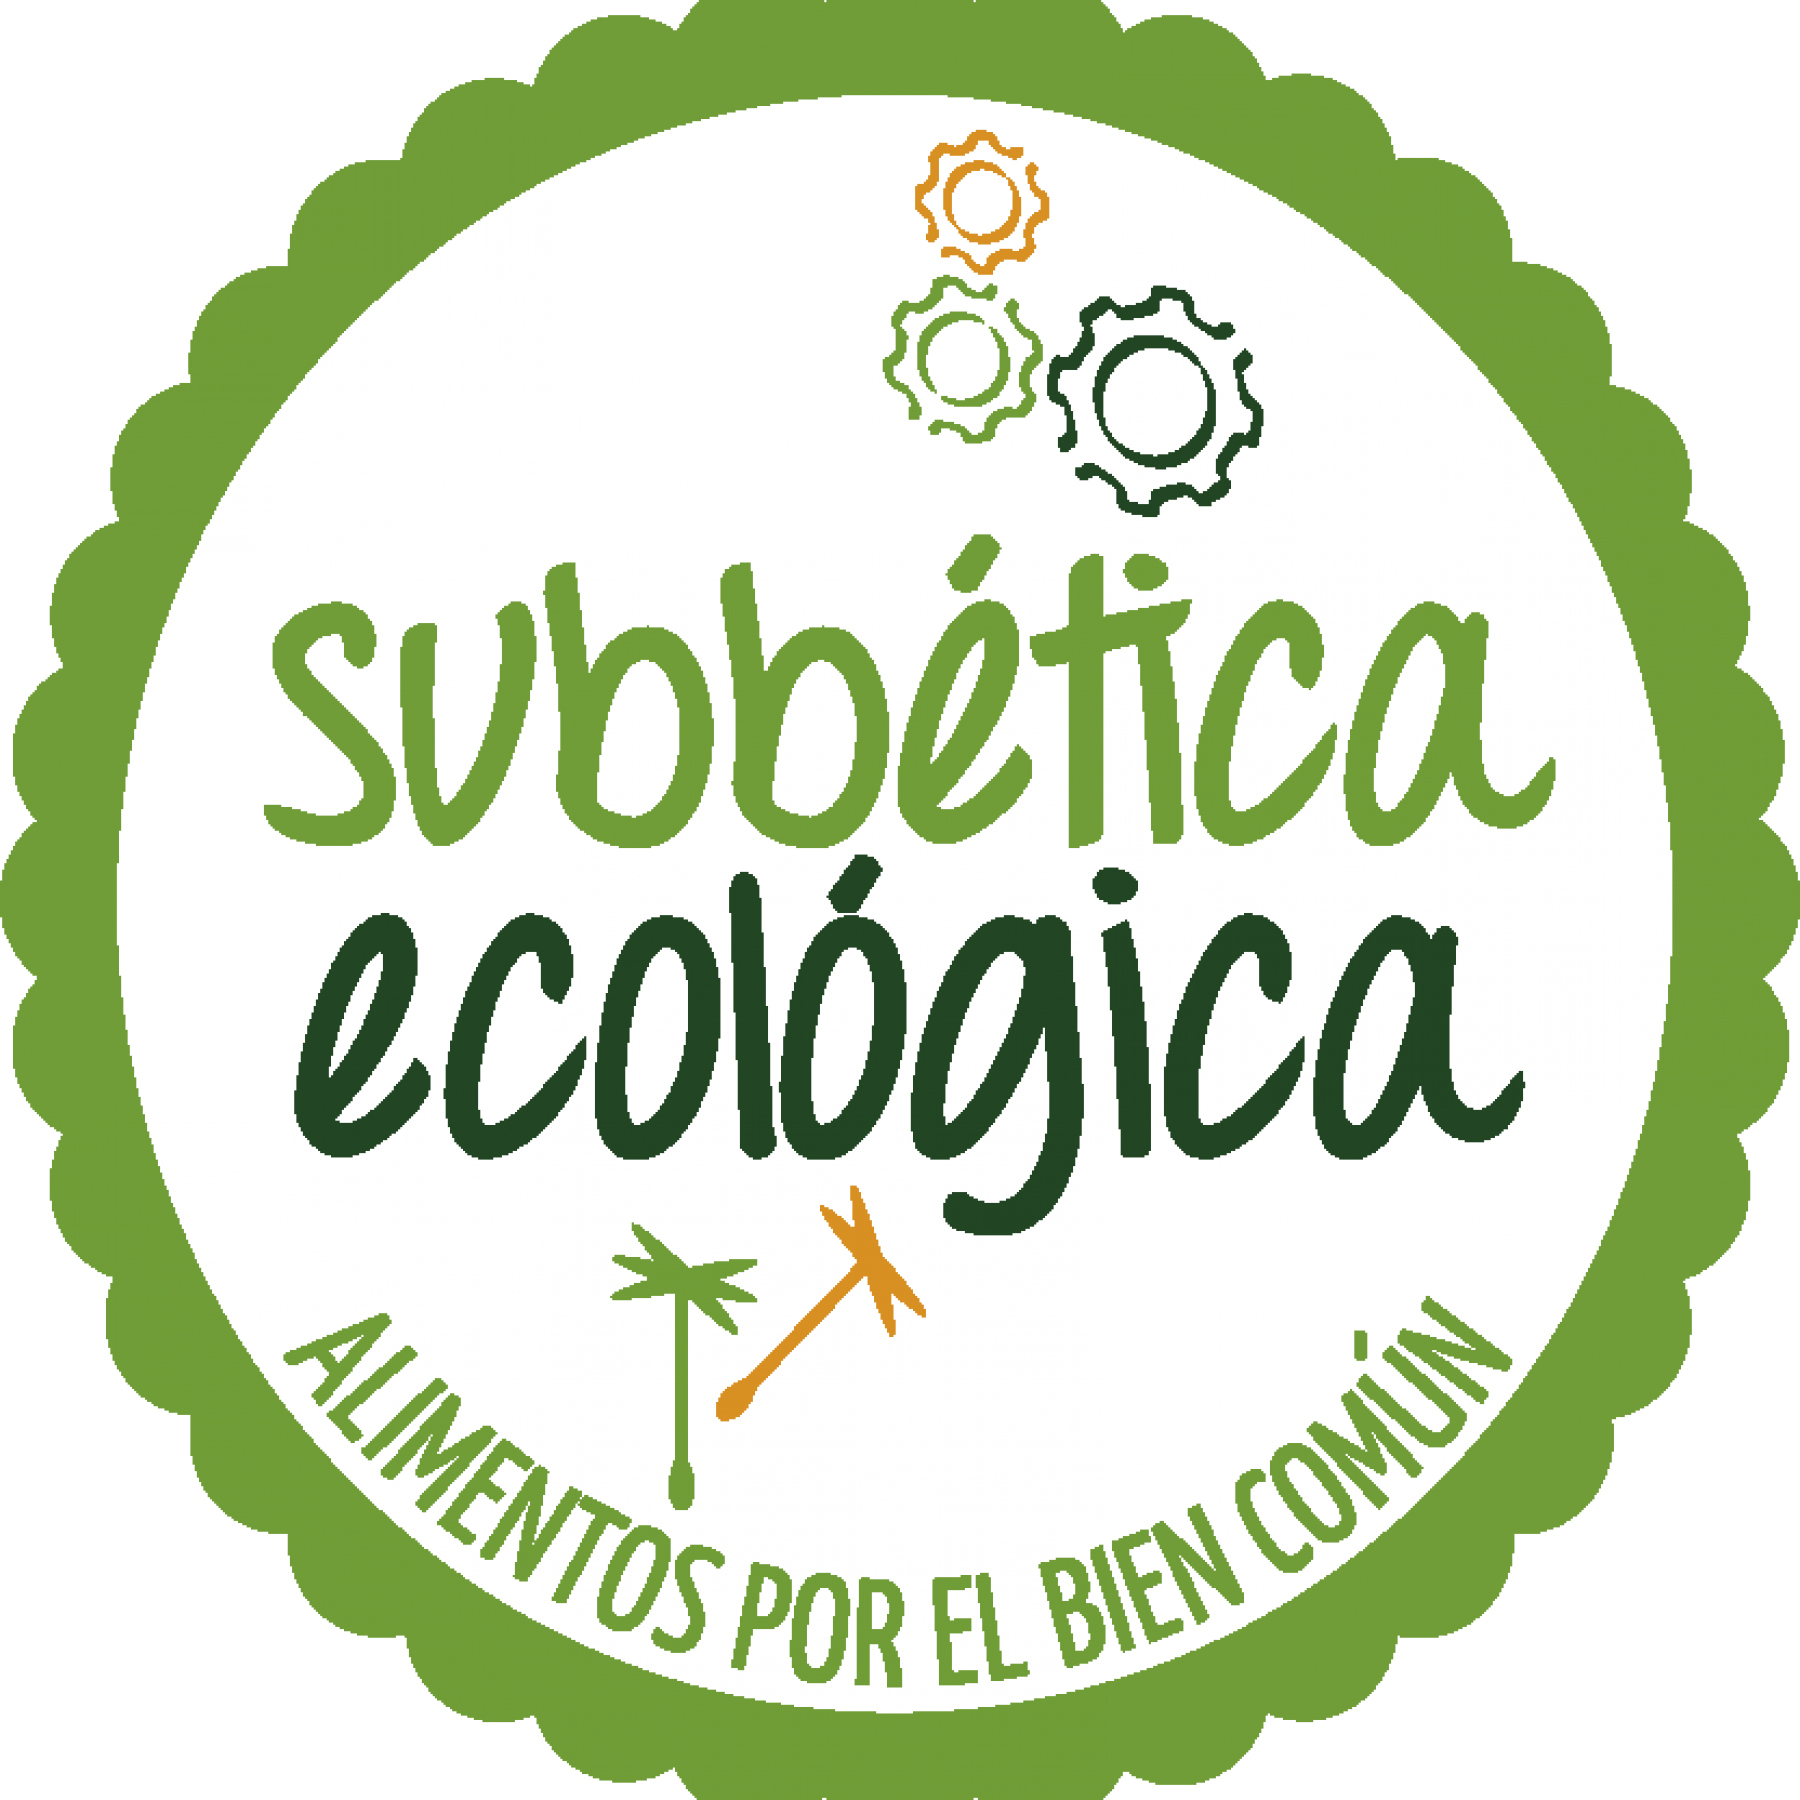 Visita al Ecocentro Subbética Ecológica, Cabra